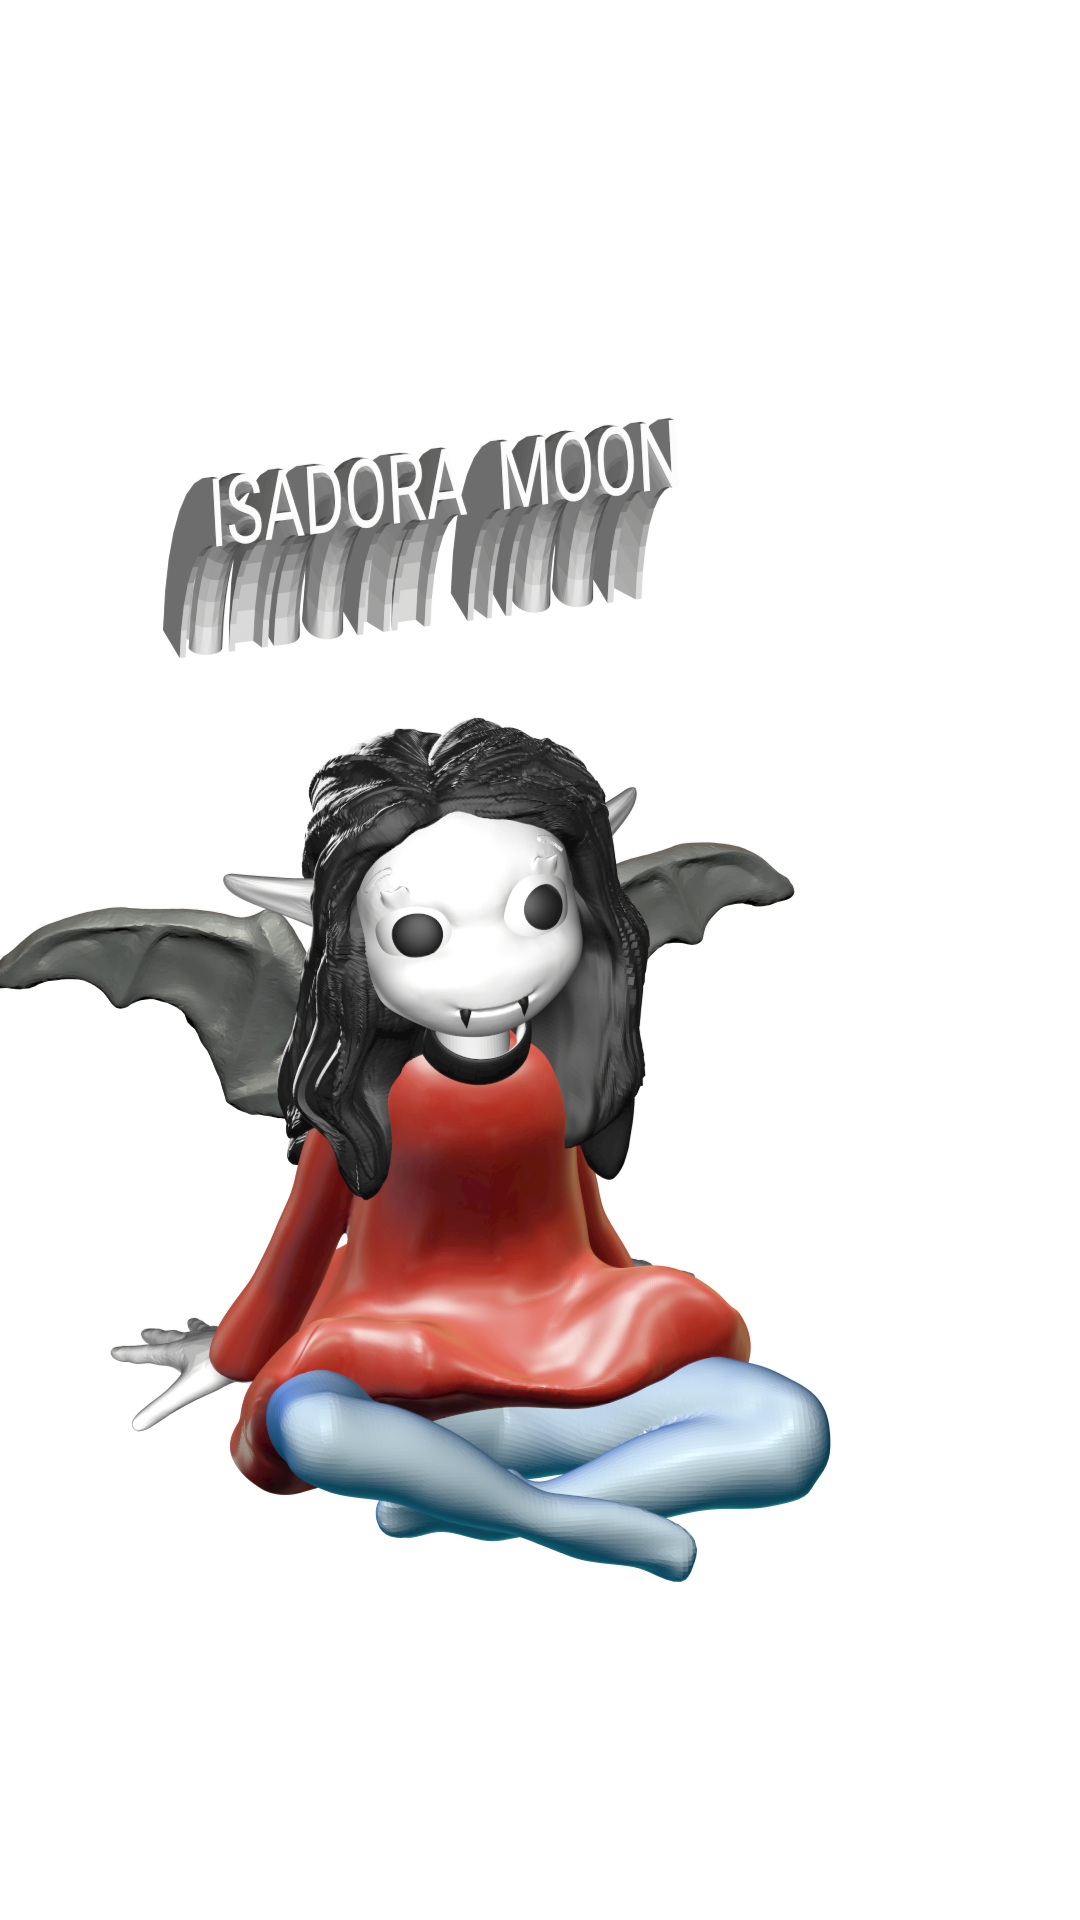 misad.png Download OBJ file Isadora moon • 3D print model, jorgeps4